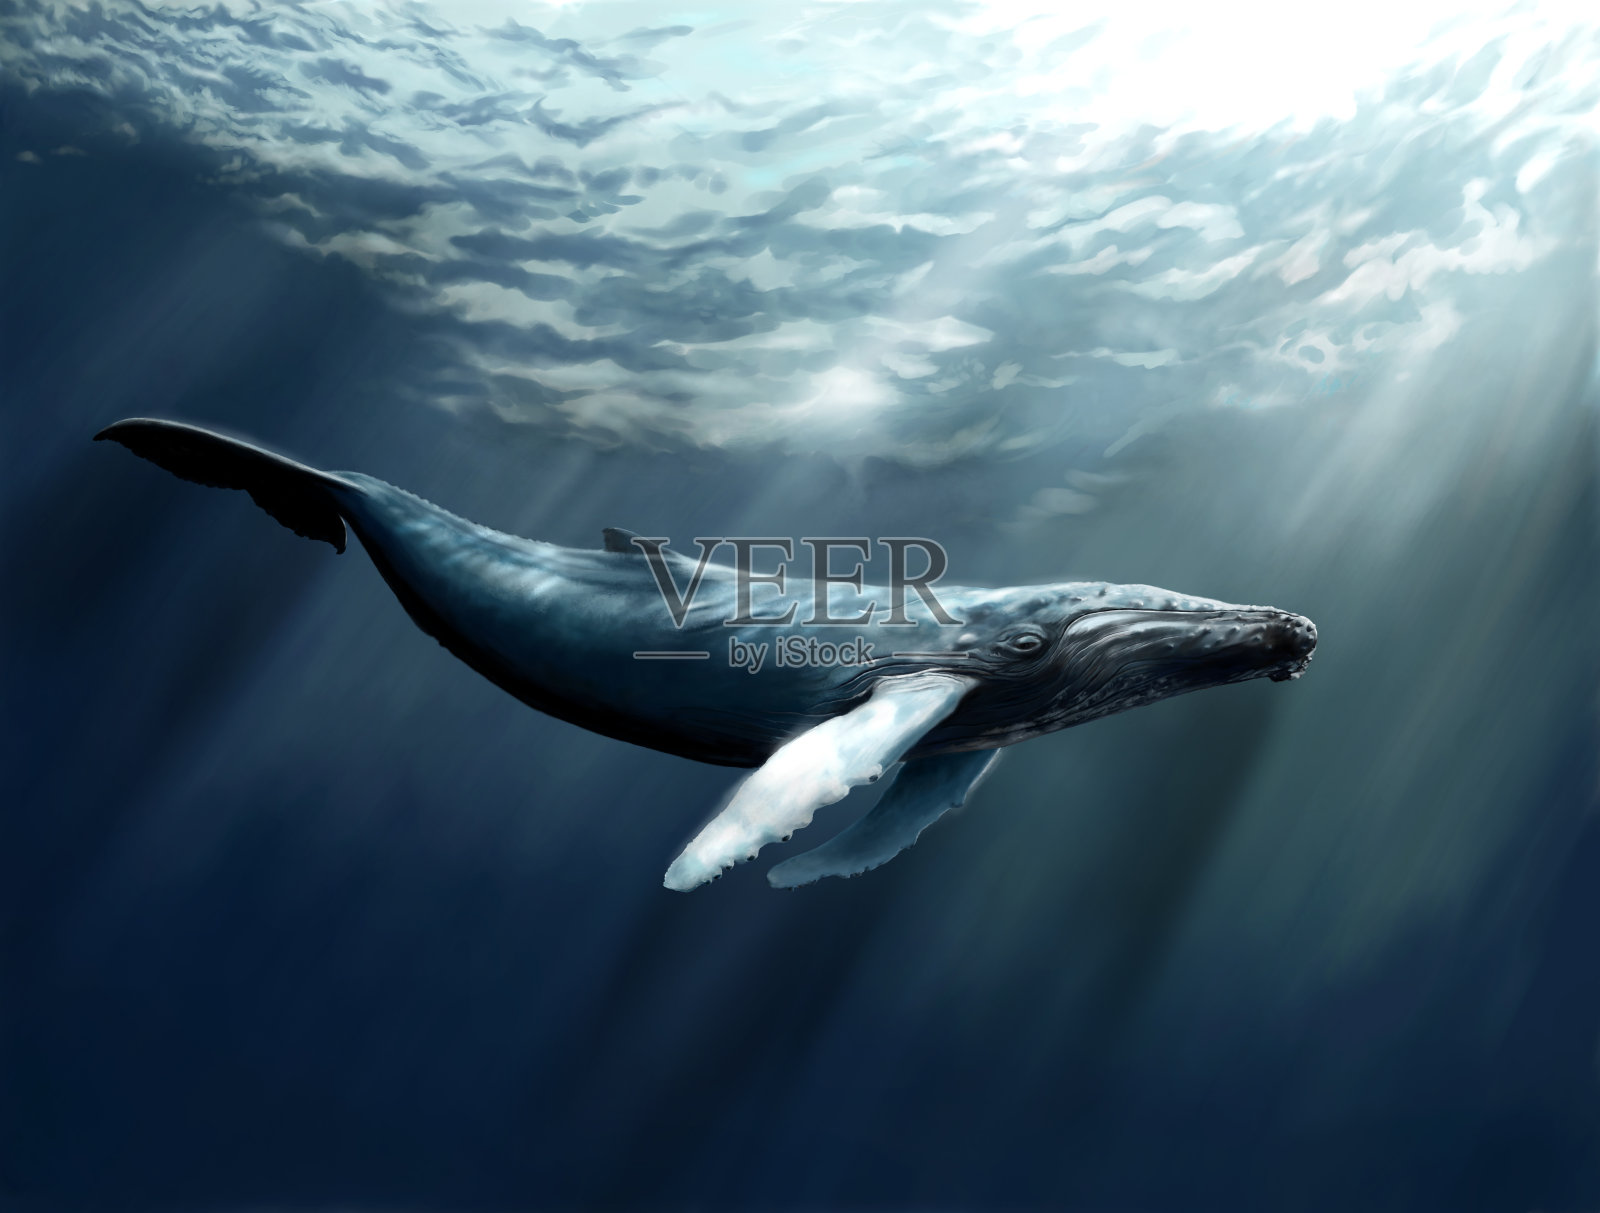 图片素材 : 水, 蓝色, 座头鲸, 脊椎动物, 海洋哺乳动物, 风波, 鲸鱼海豚和海豚, 灰鲸 5108x3405 - - 137567 ...